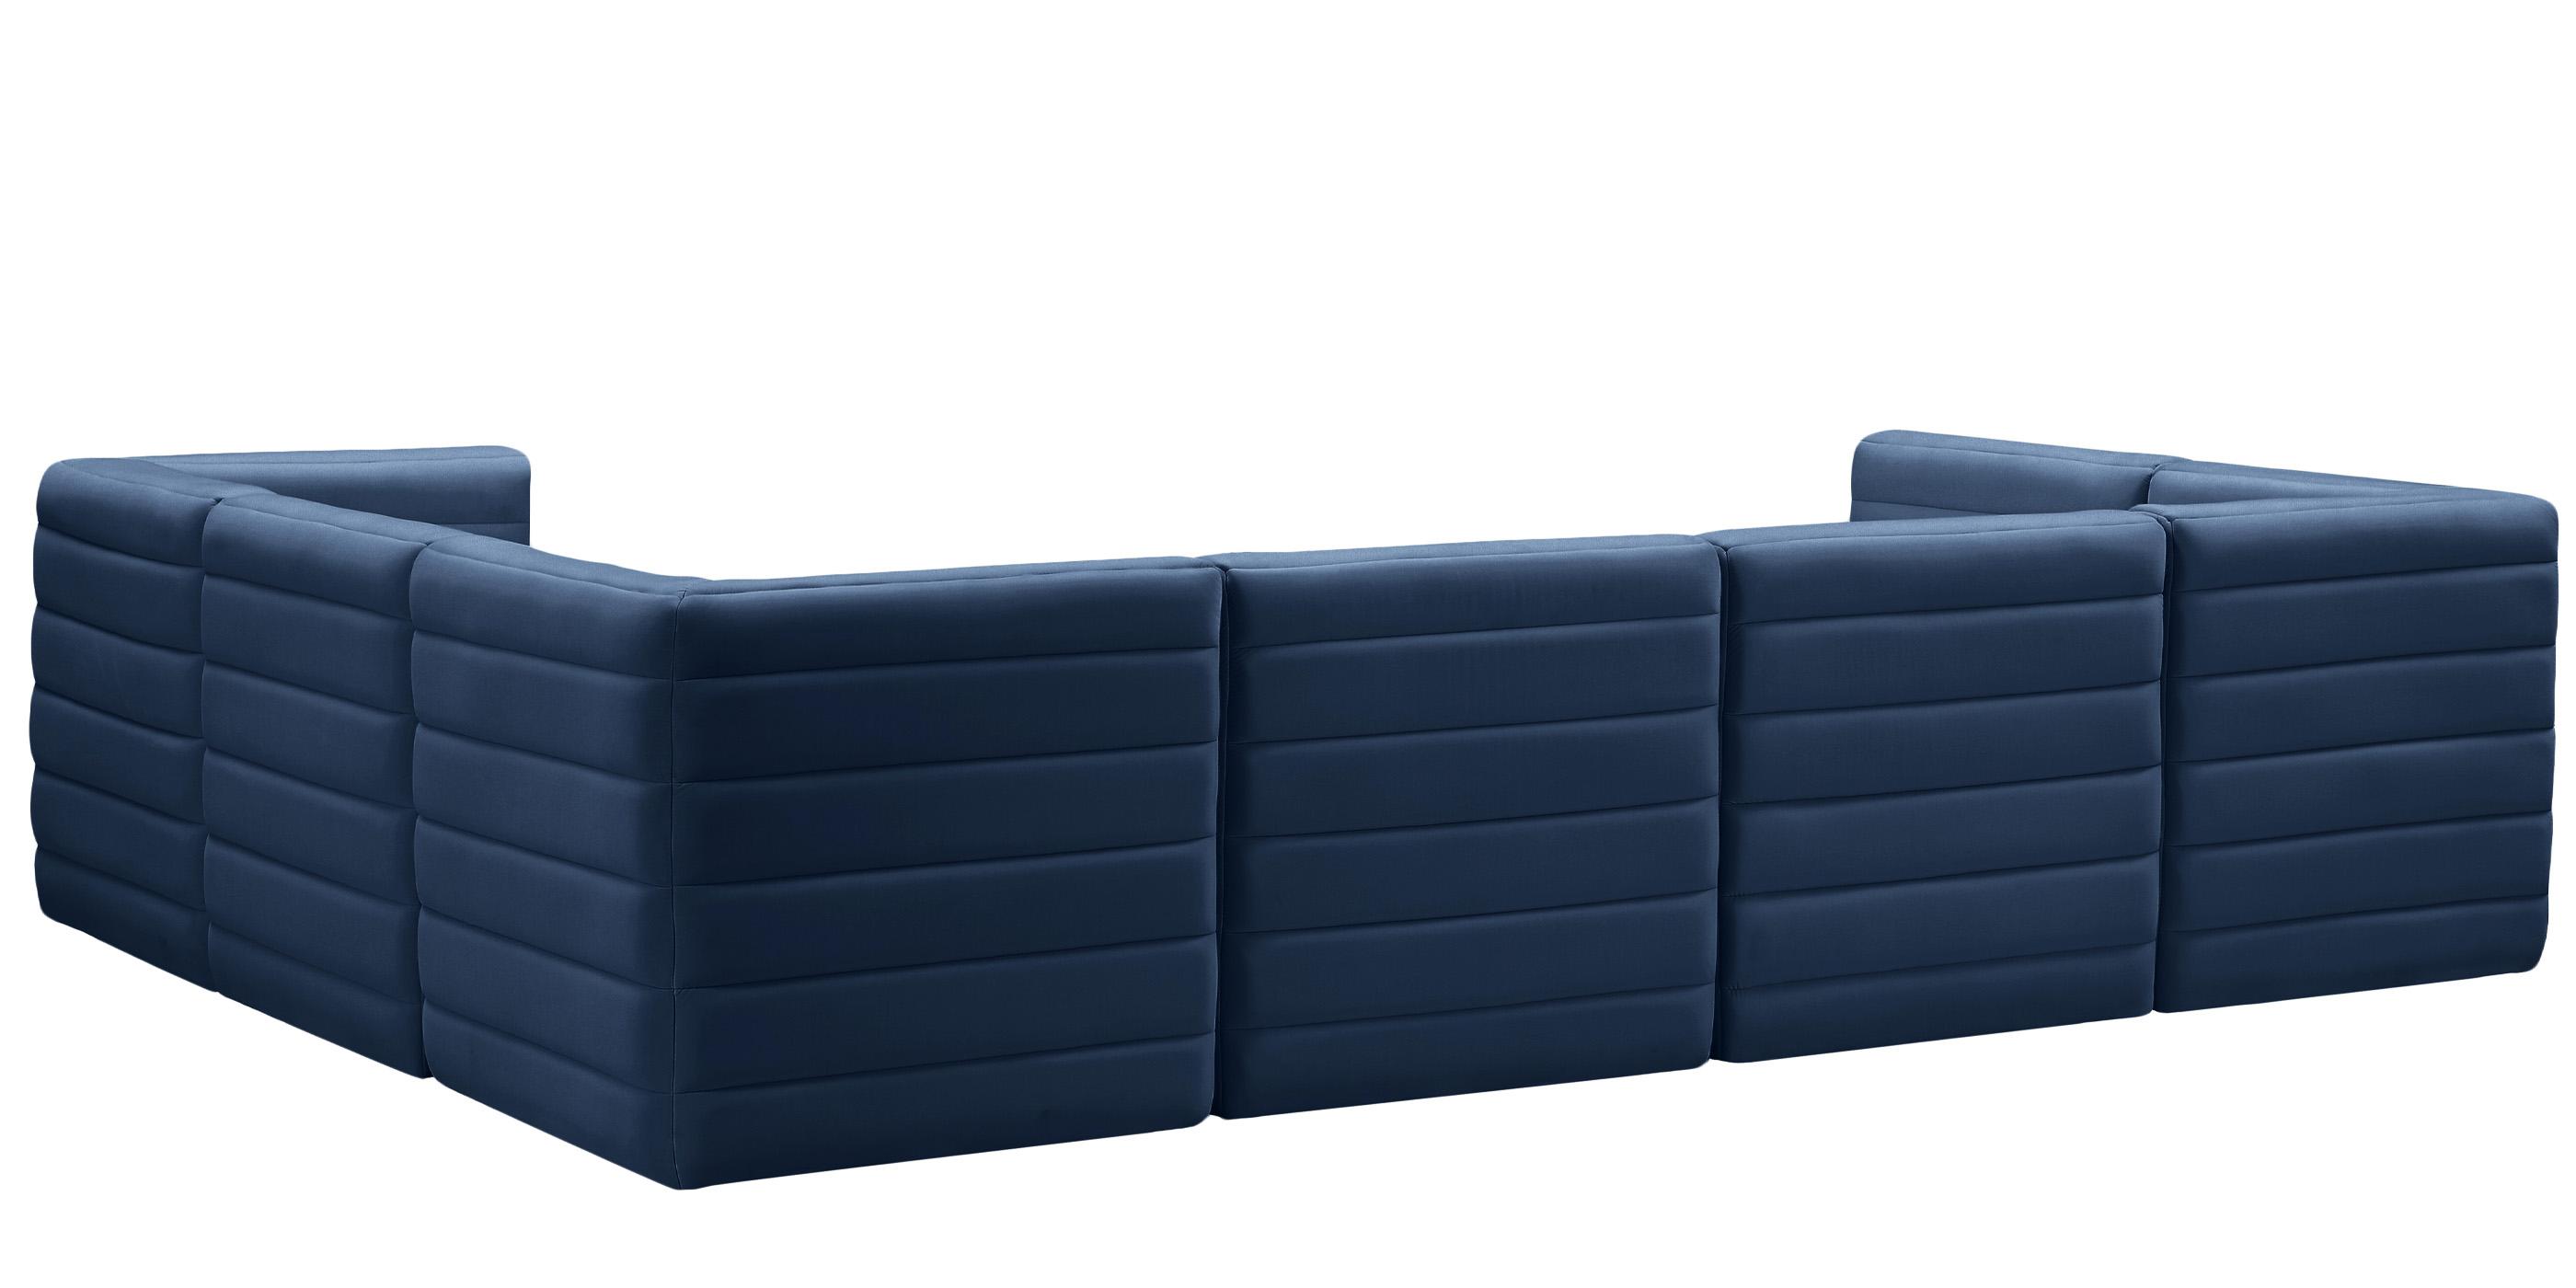 

    
677Navy-Sec7A Meridian Furniture Modular Sectional Sofa
